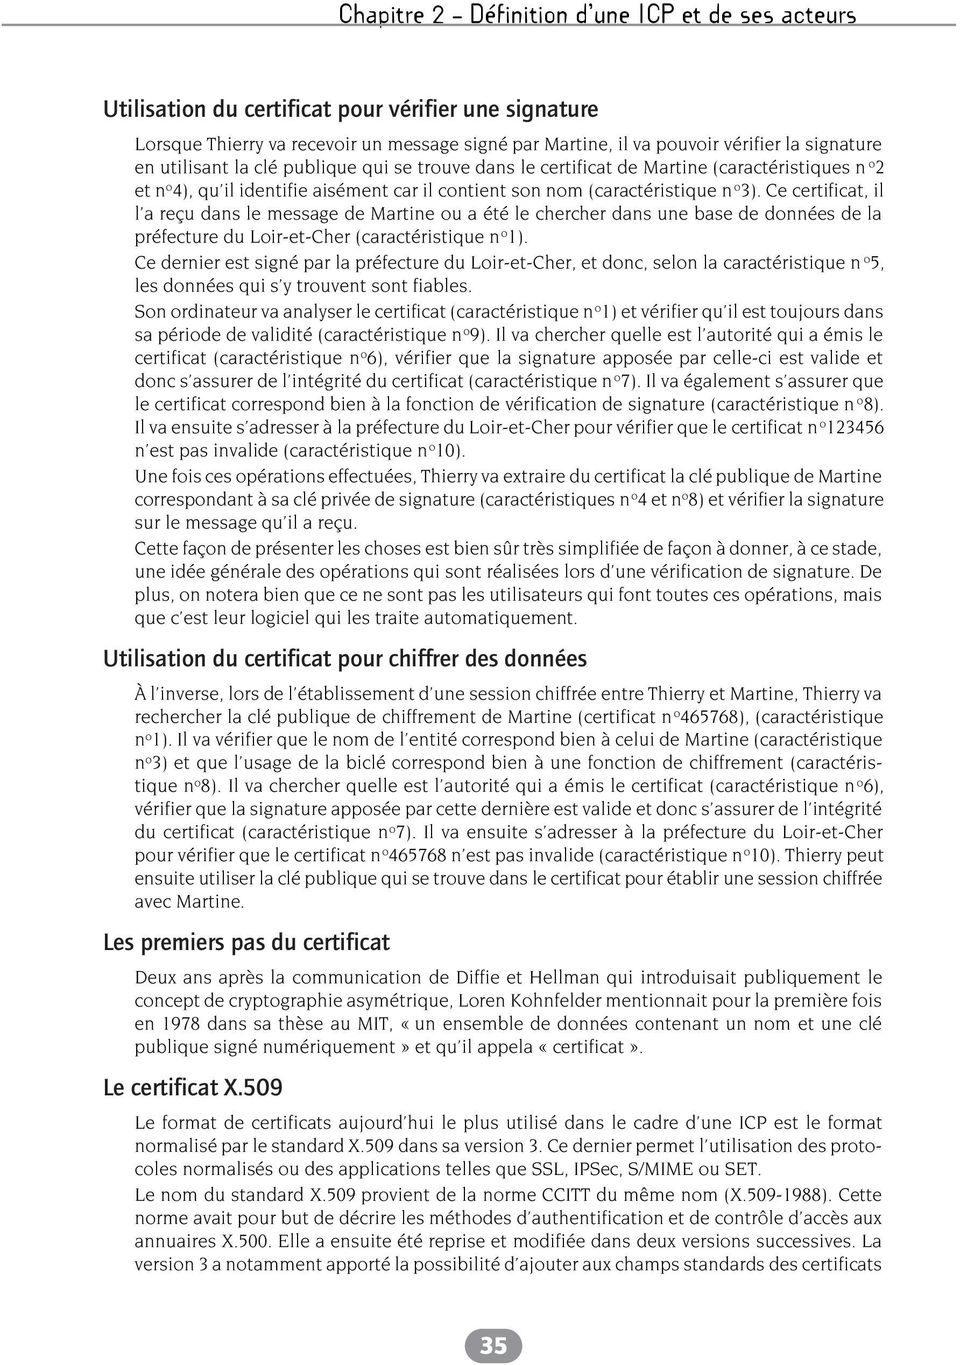 Ce certificat, il l a reçu dans le message de Martine ou a été le chercher dans une base de données de la préfecture du Loir-et-Cher (caractéristique n o 1).